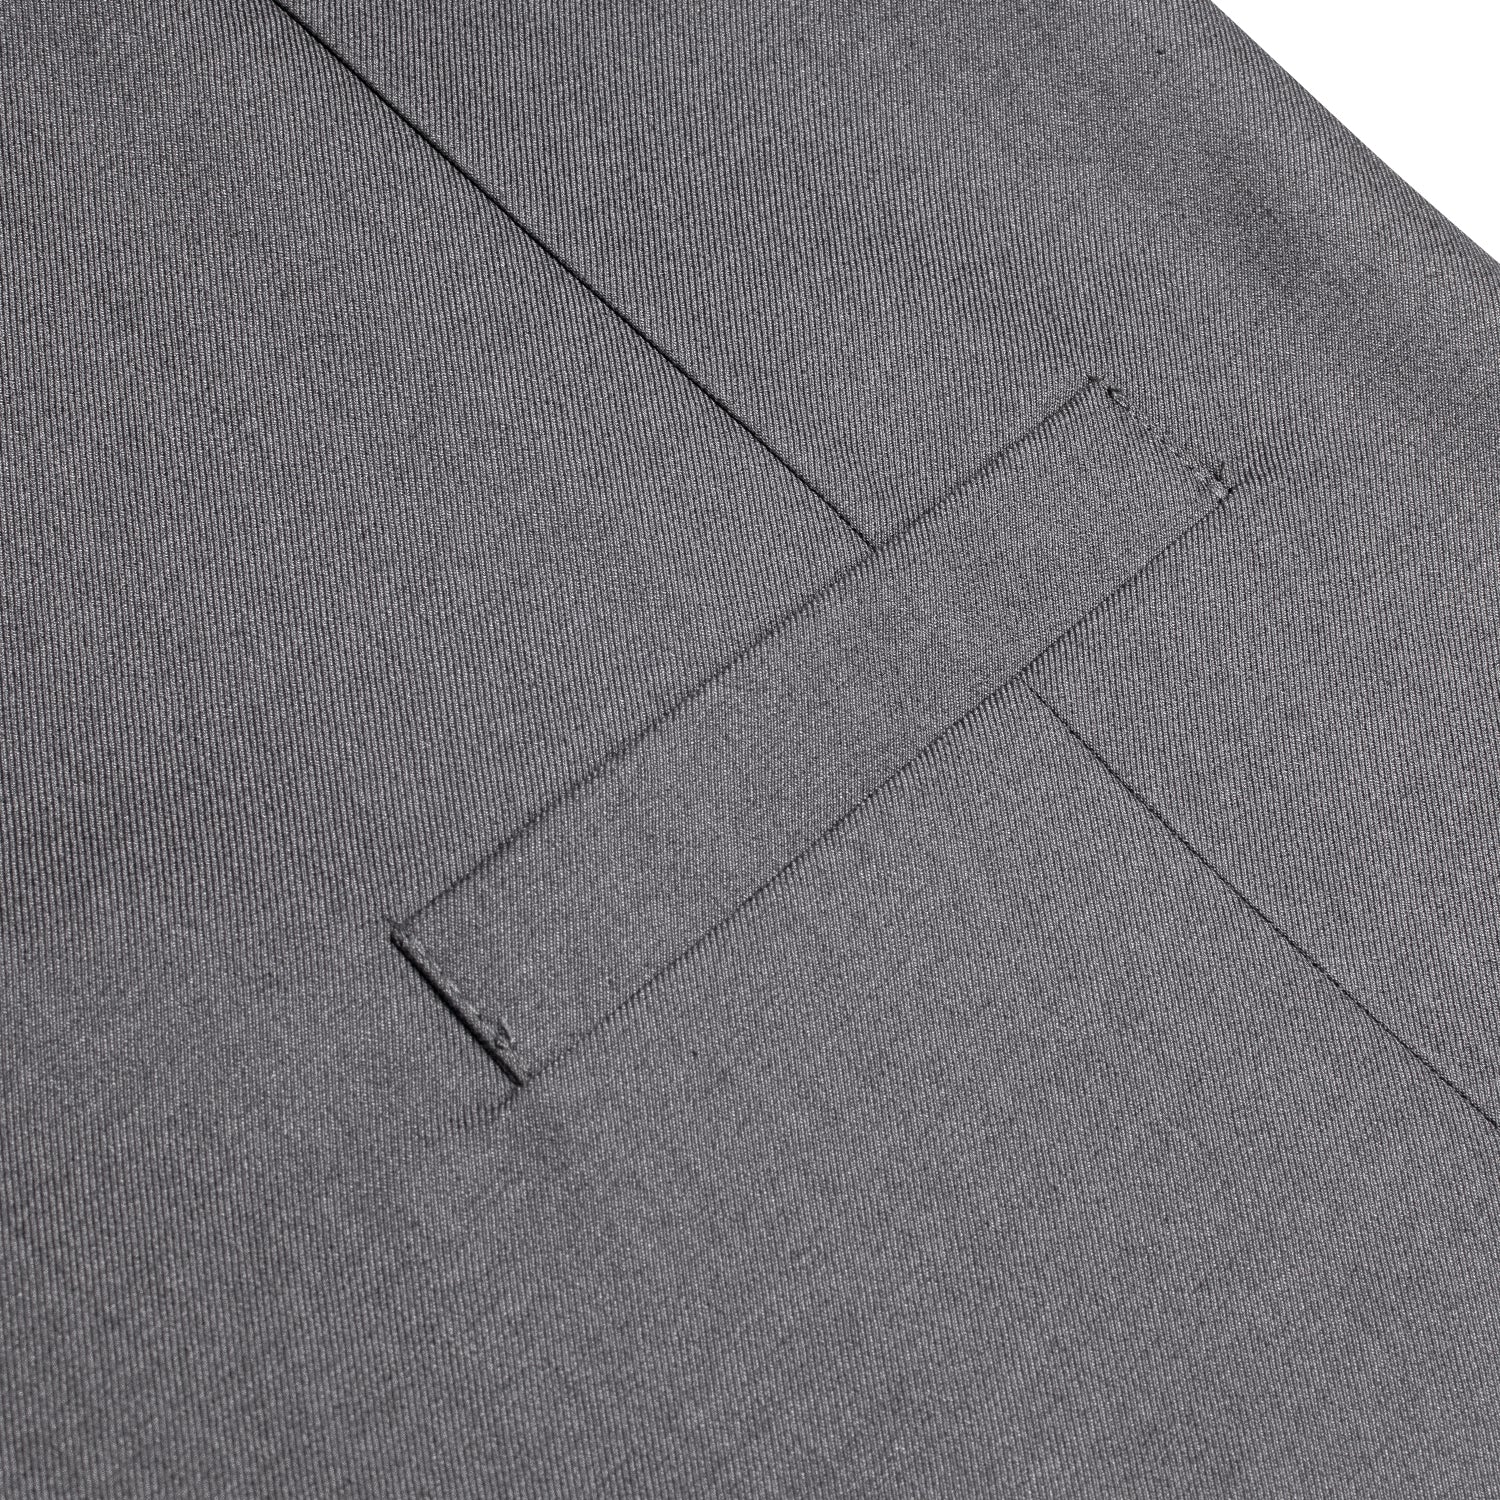 New Grey Solid Silk Men's Single Vest Waistcoat